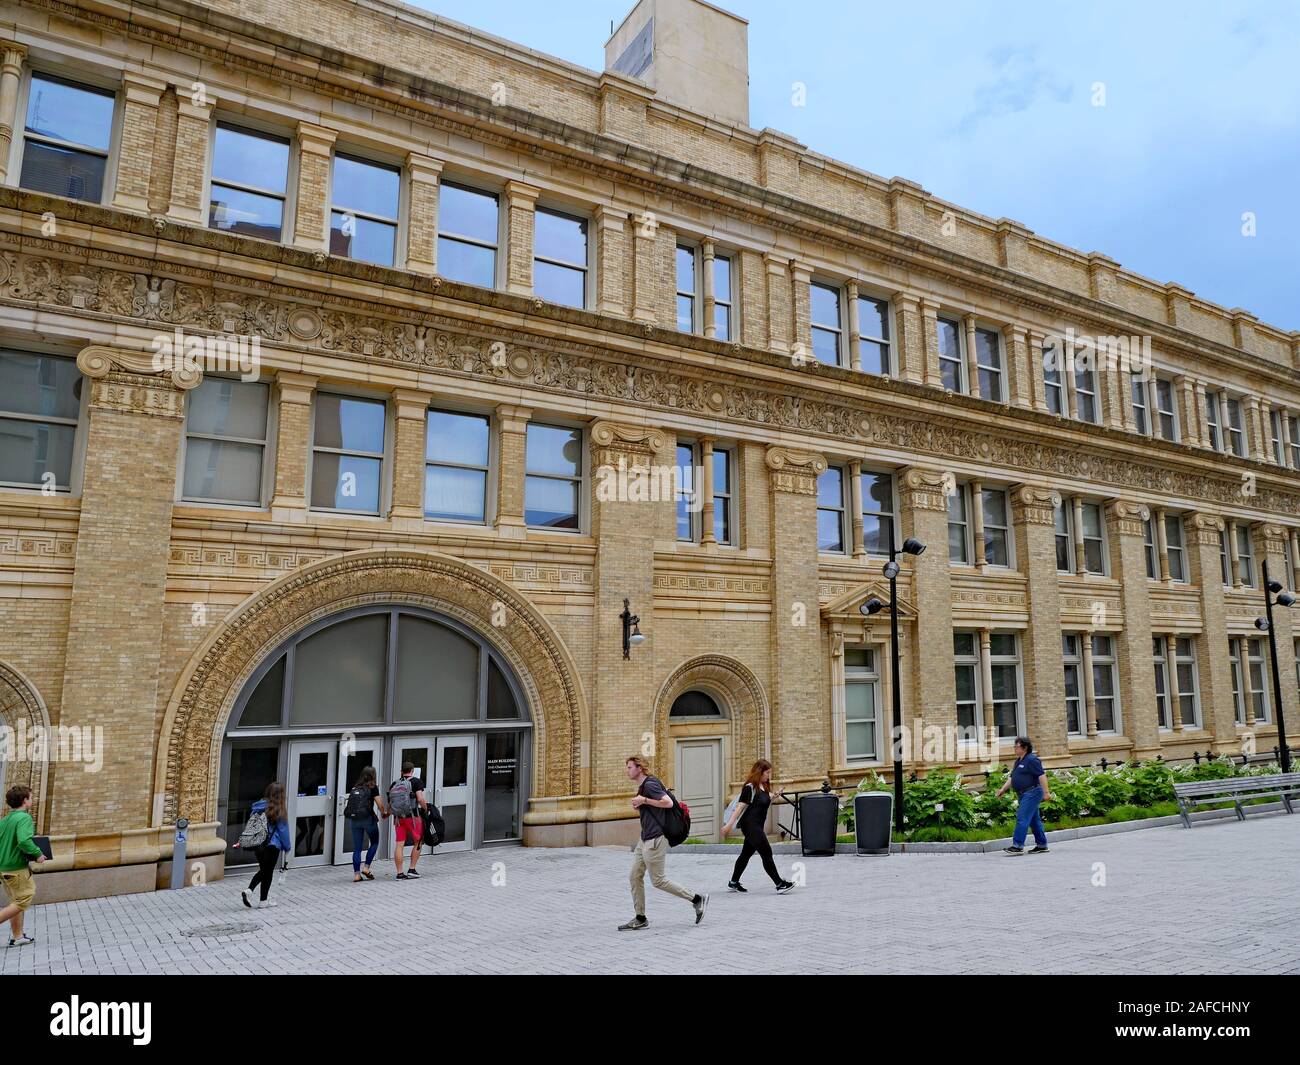 PHILADELPHIA - Mai 2019 : campus du collège occupé avec un bâtiment ancien, Drexel University, Philadelphia Banque D'Images